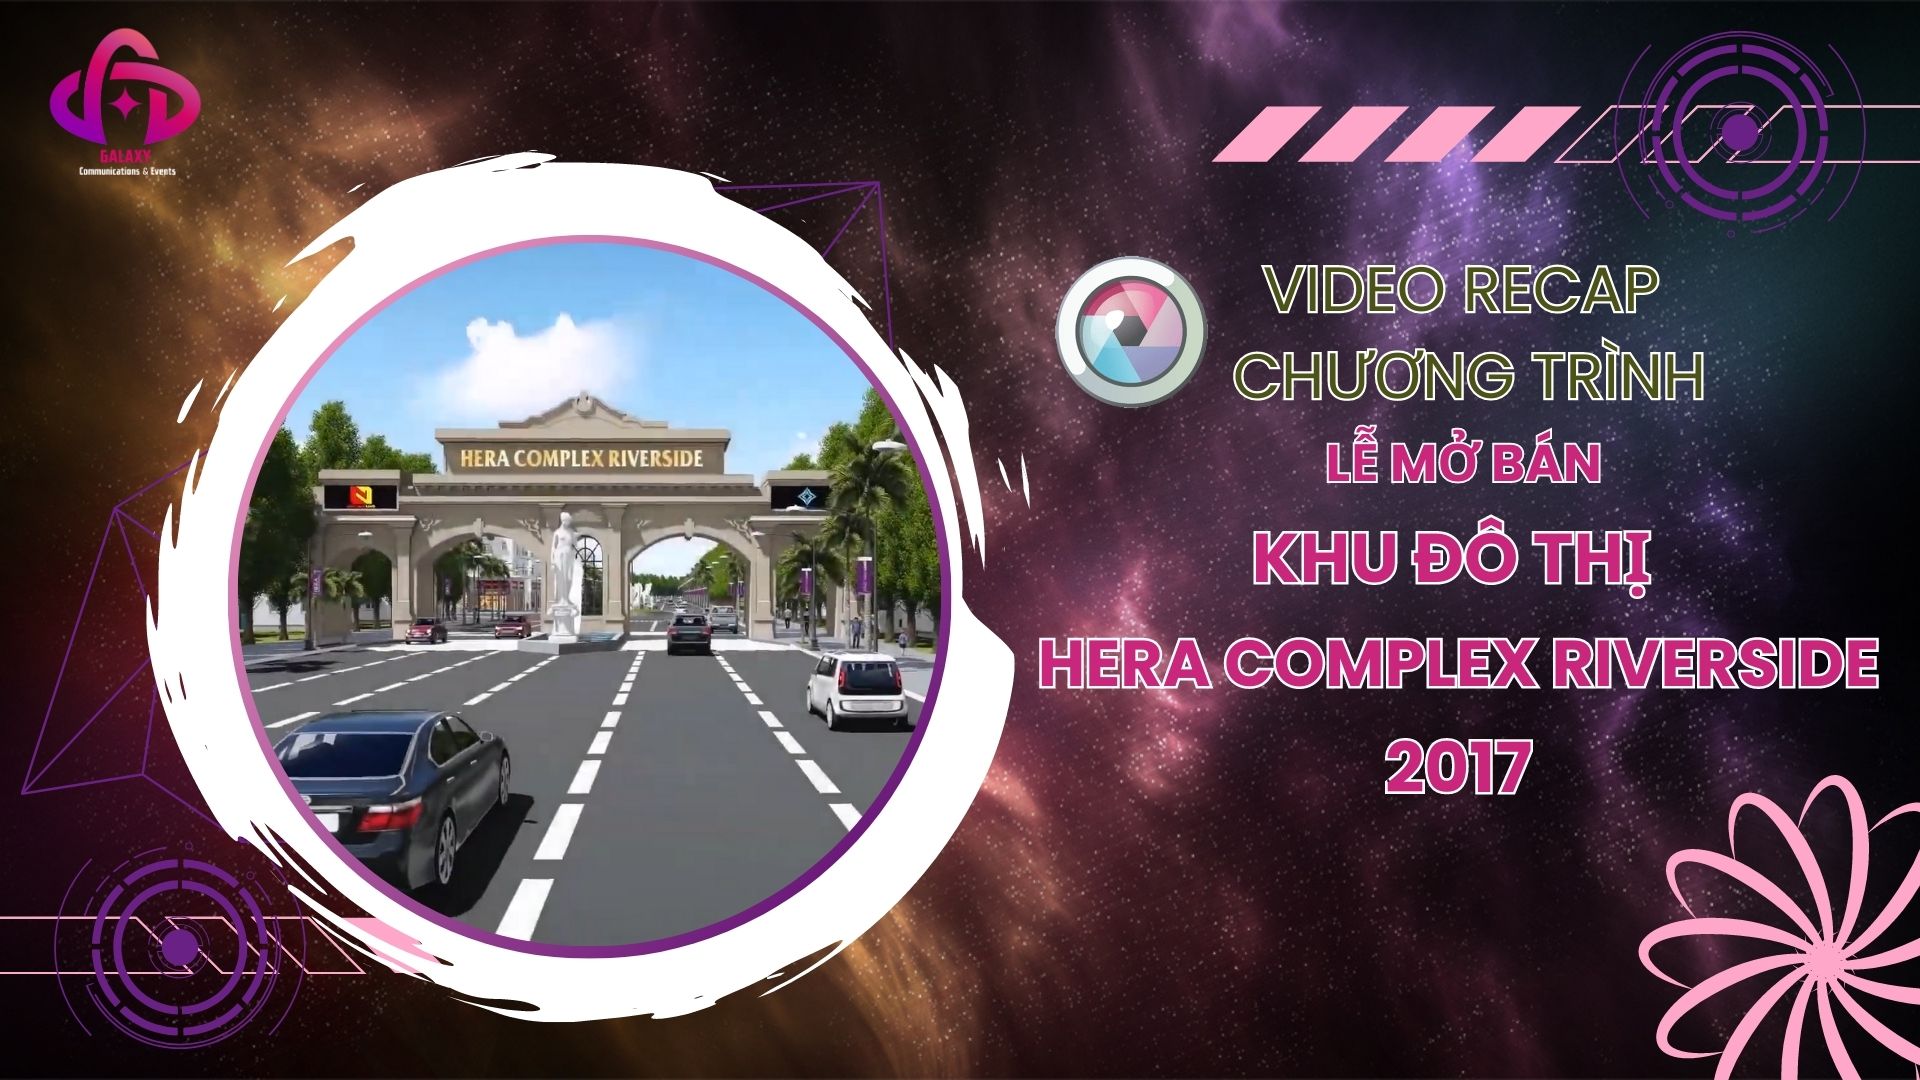 [Official Video Recap] Lễ mở bán khu đô thị Hera Complex